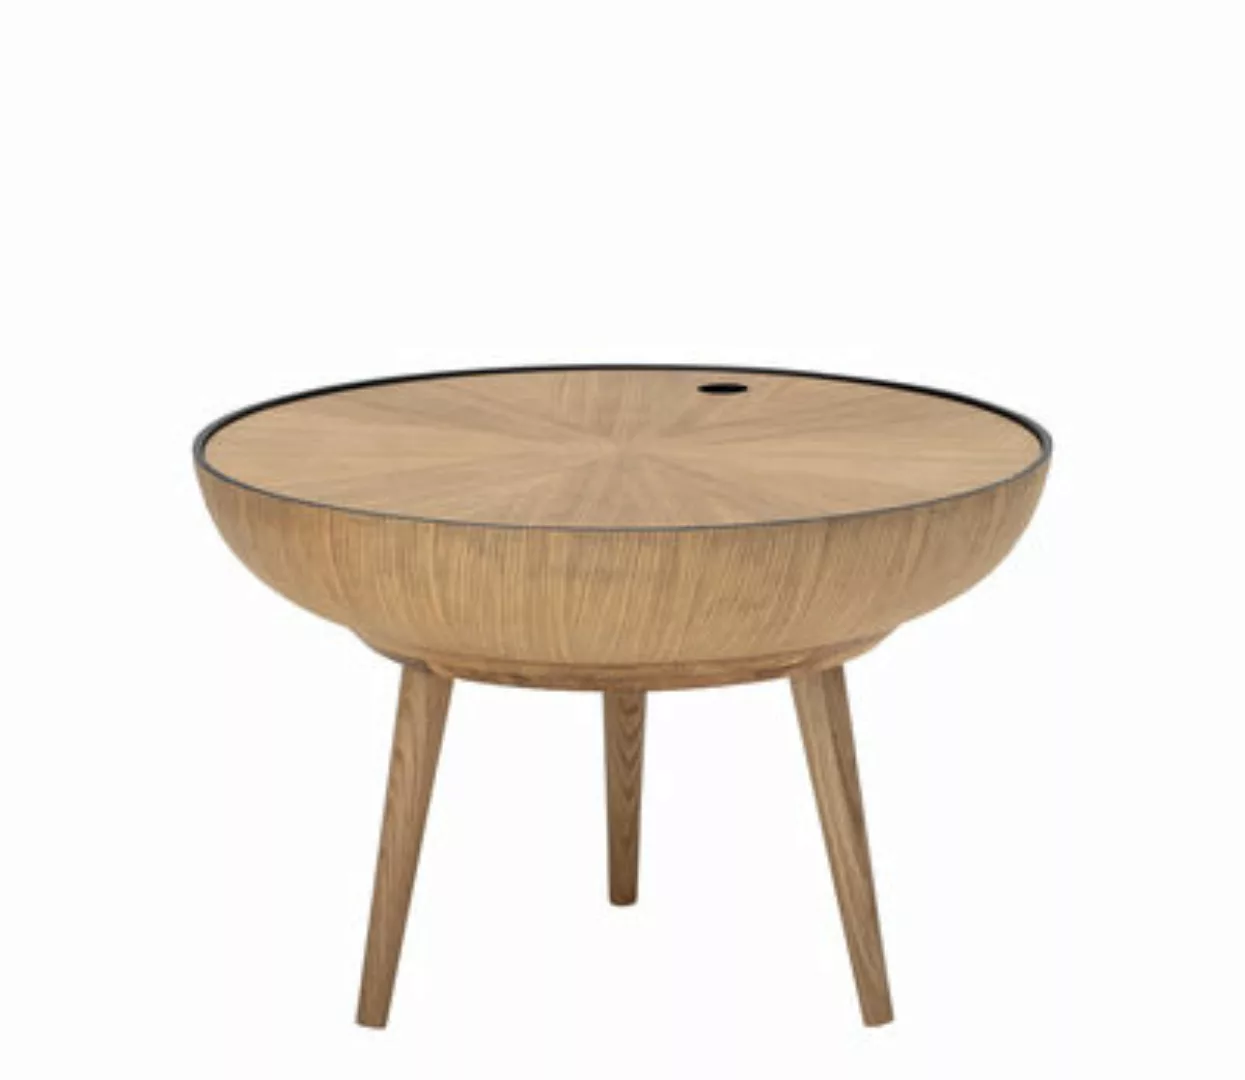 Couchtisch Ronda holz natur / abnehmbare Tischplatte - Ø 60 cm - Bloomingvi günstig online kaufen